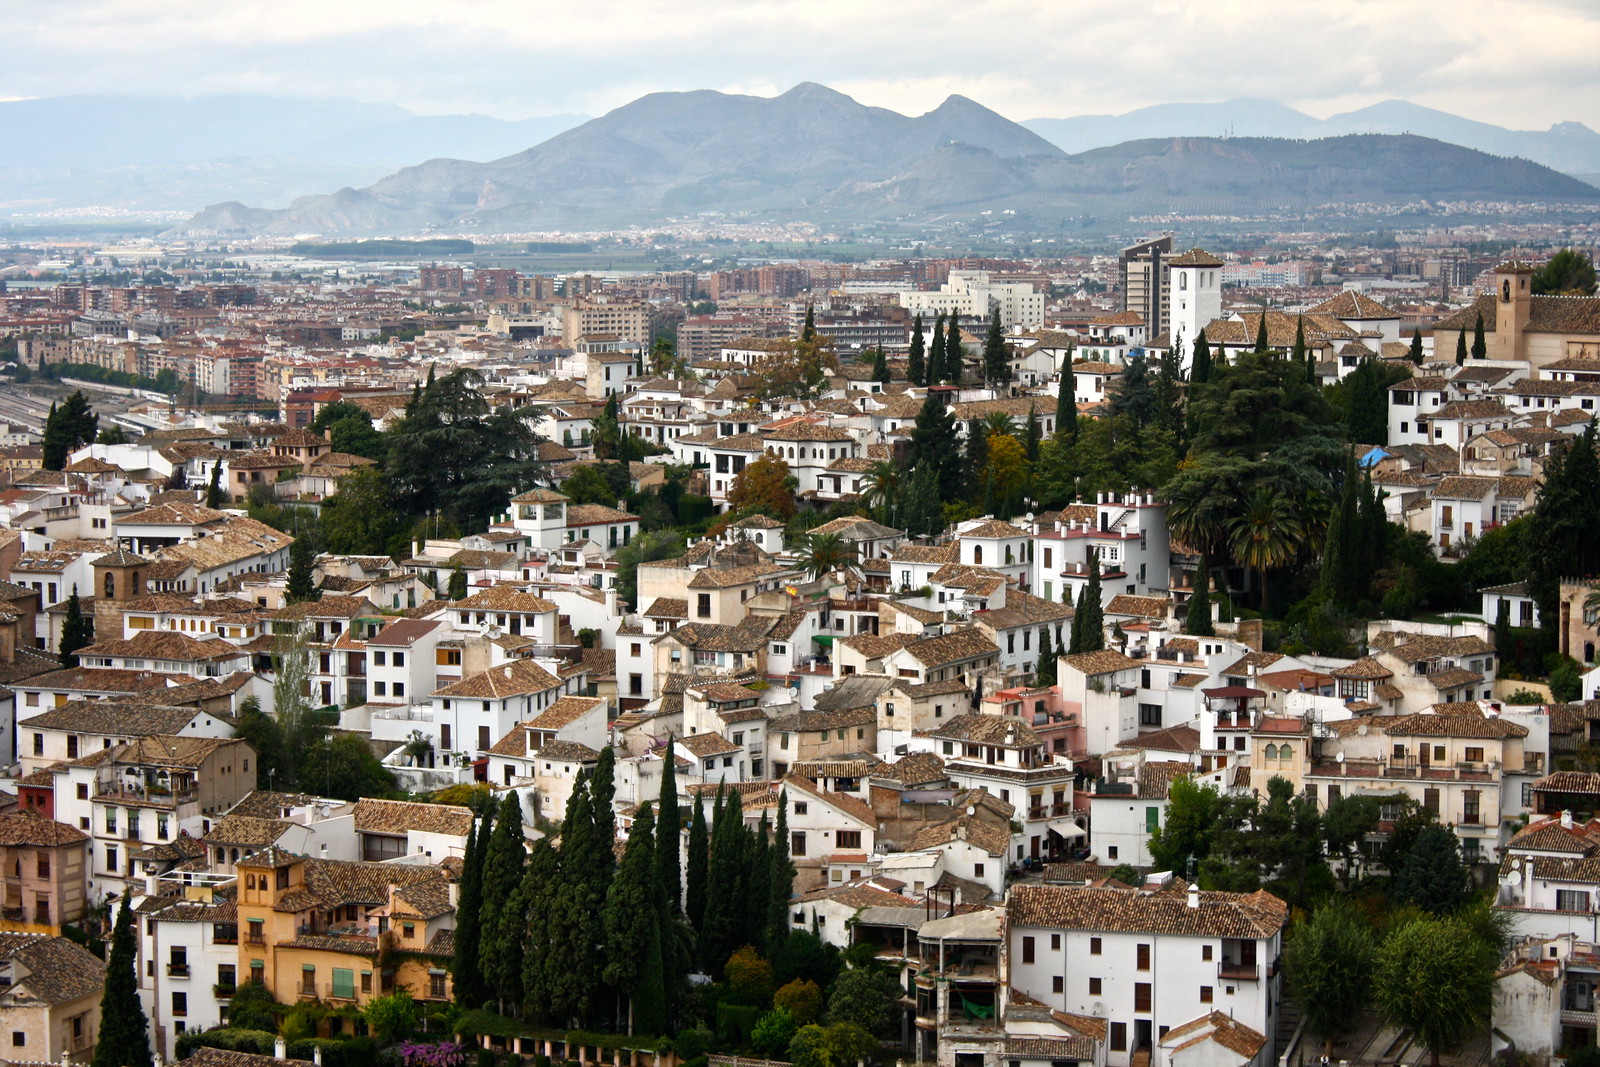 Albaicín neighborhood, Granada, Spain